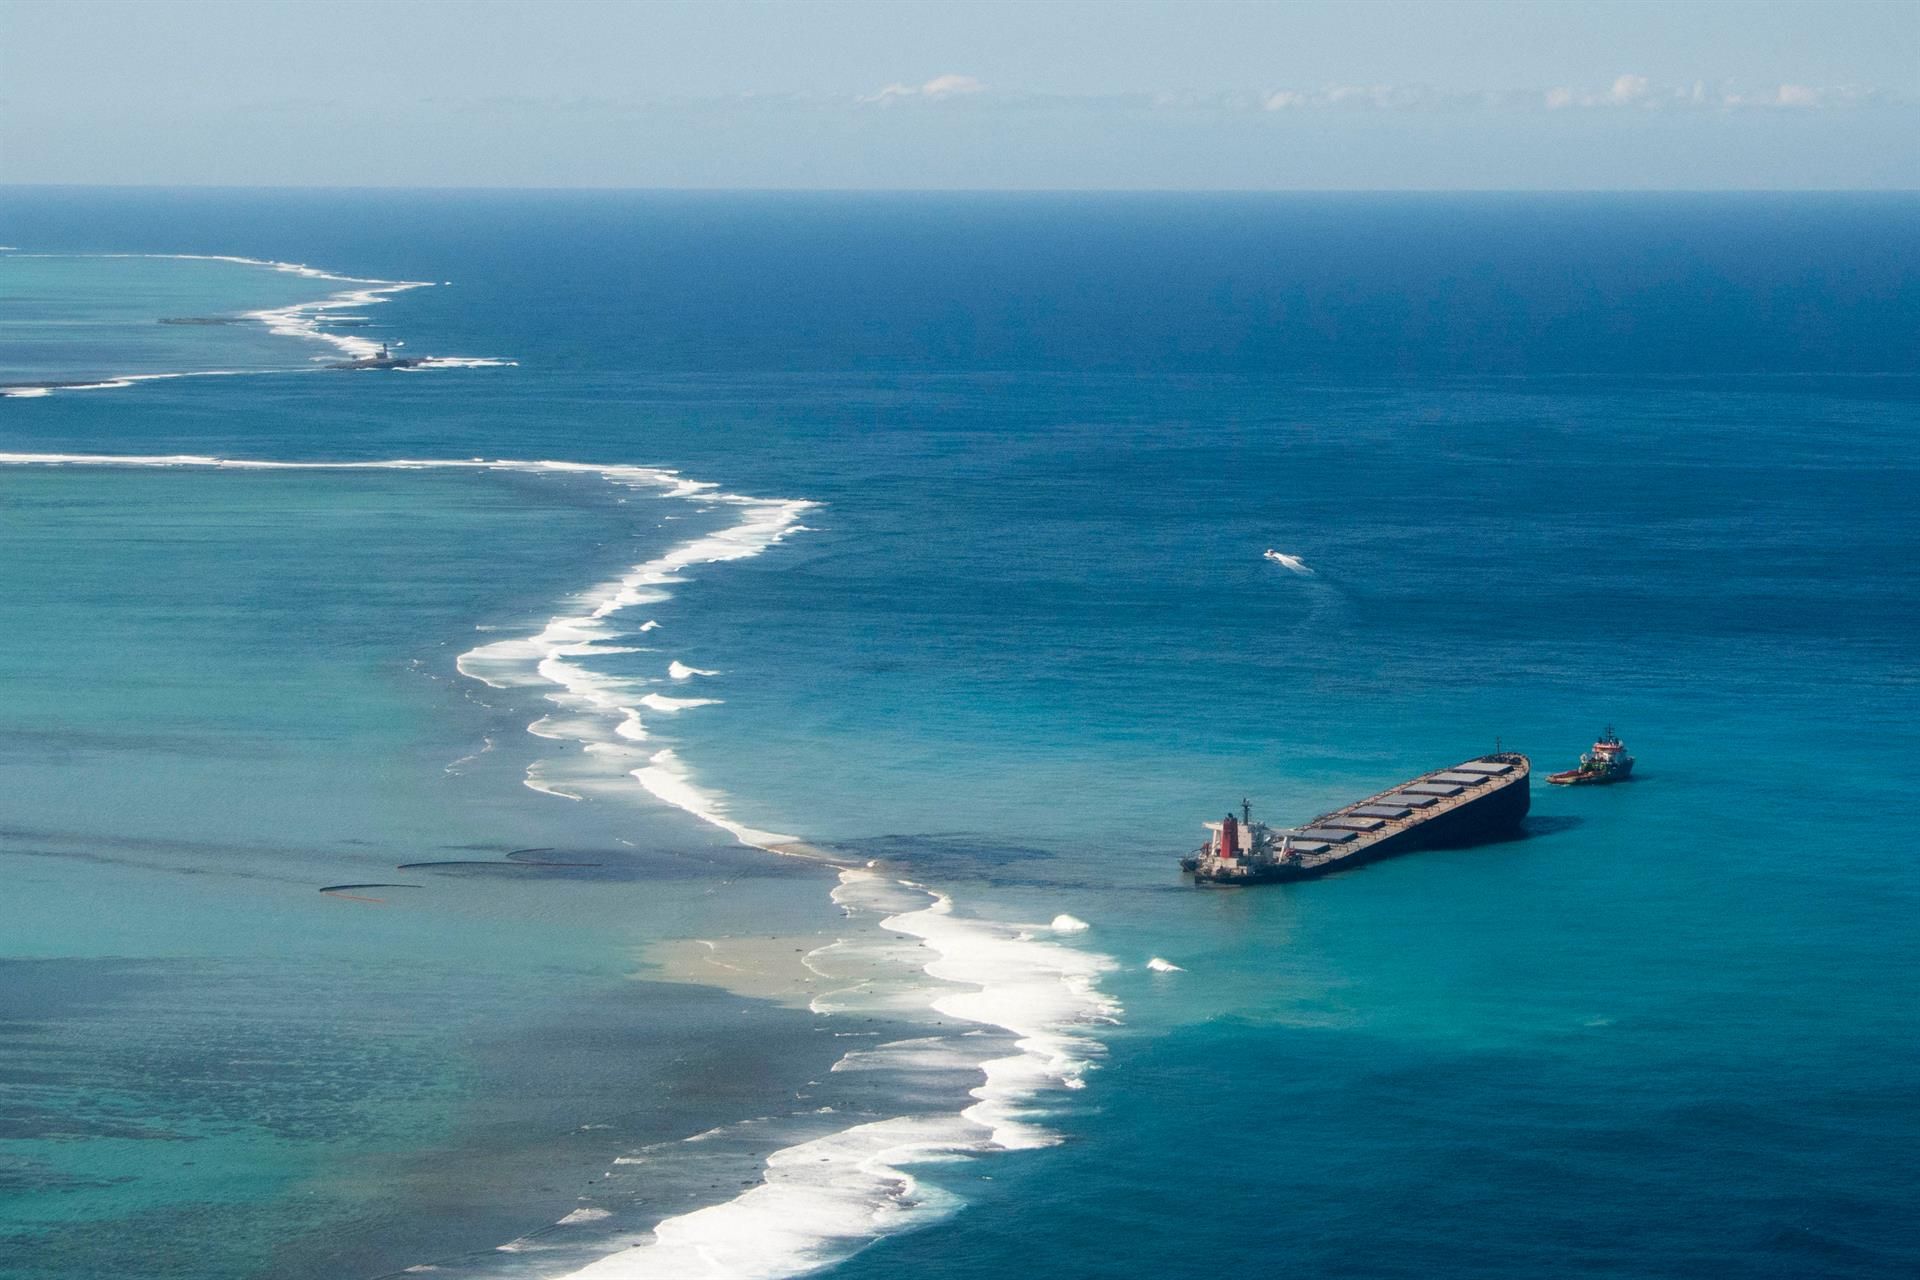 Vista general de la fuga de petróleo del MV Wakashio, un buque granelero que encalló recientemente frente a la costa sureste de Mauricio podría ser un ejemplo de ecocidio / Foto: EP